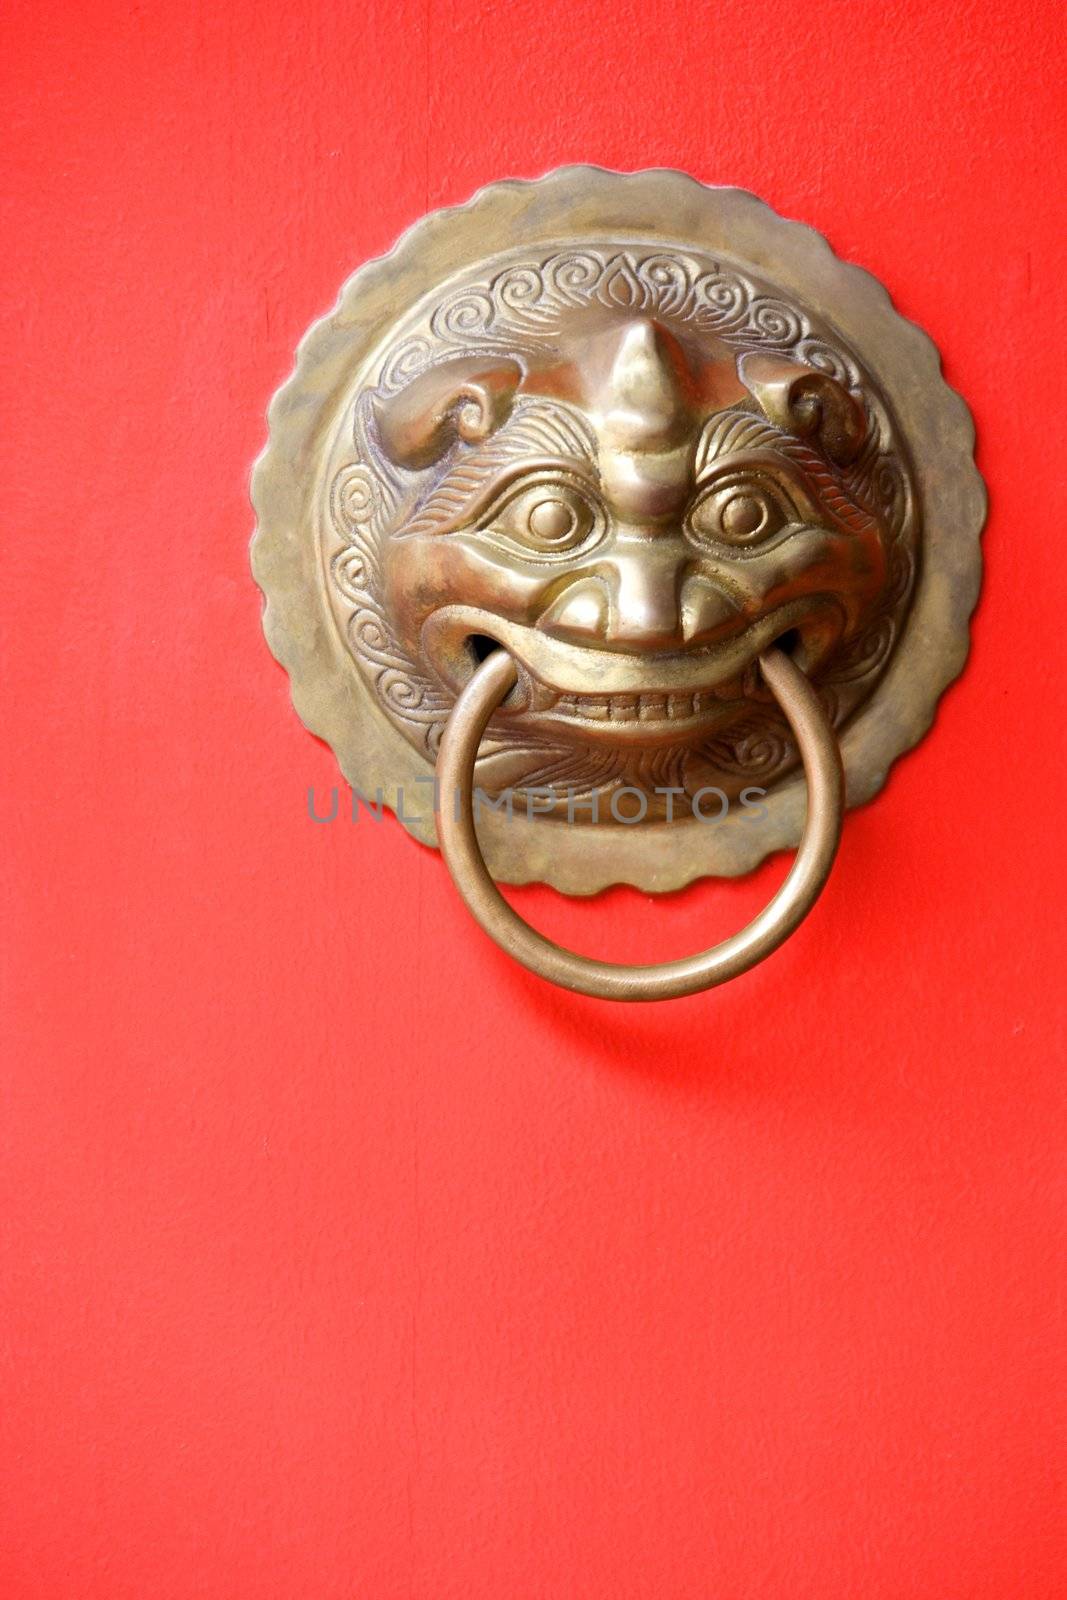 Image of an antique door knob on a bright red door.